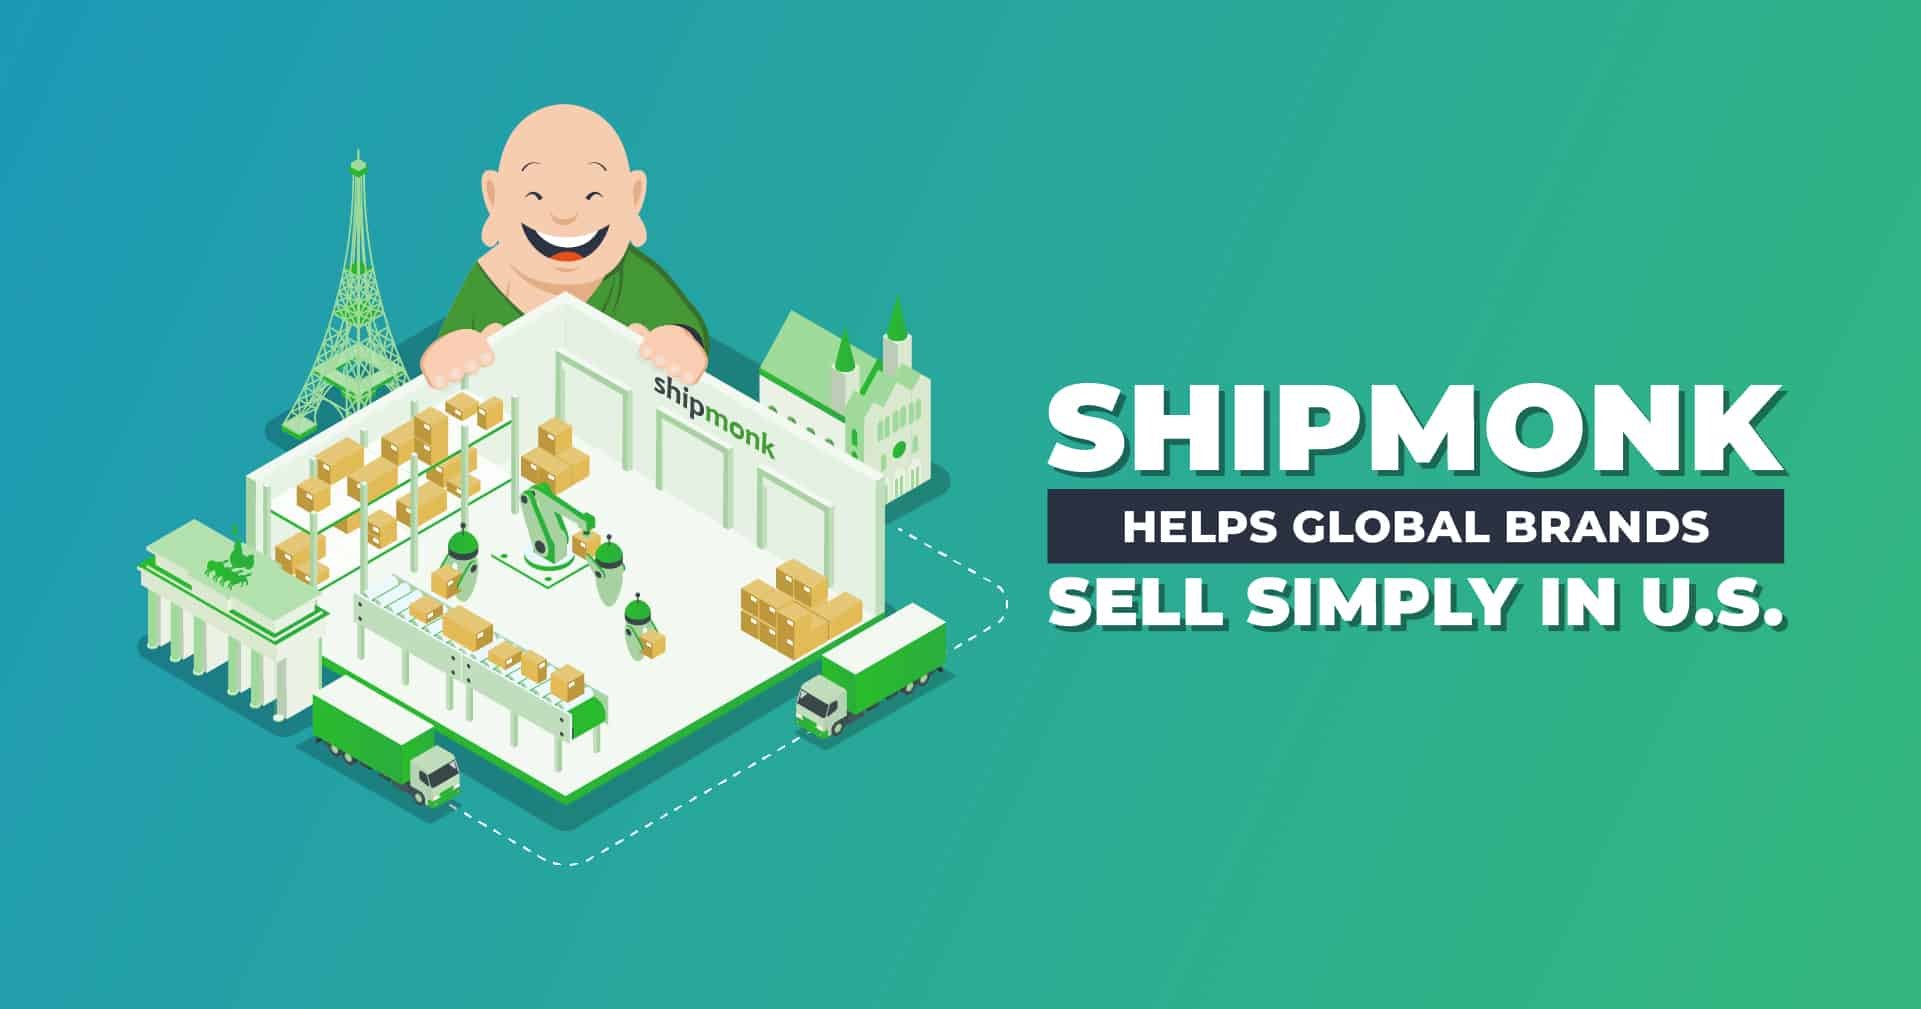 ShipMonk Helps Global Brands Sell Simply in U.S.